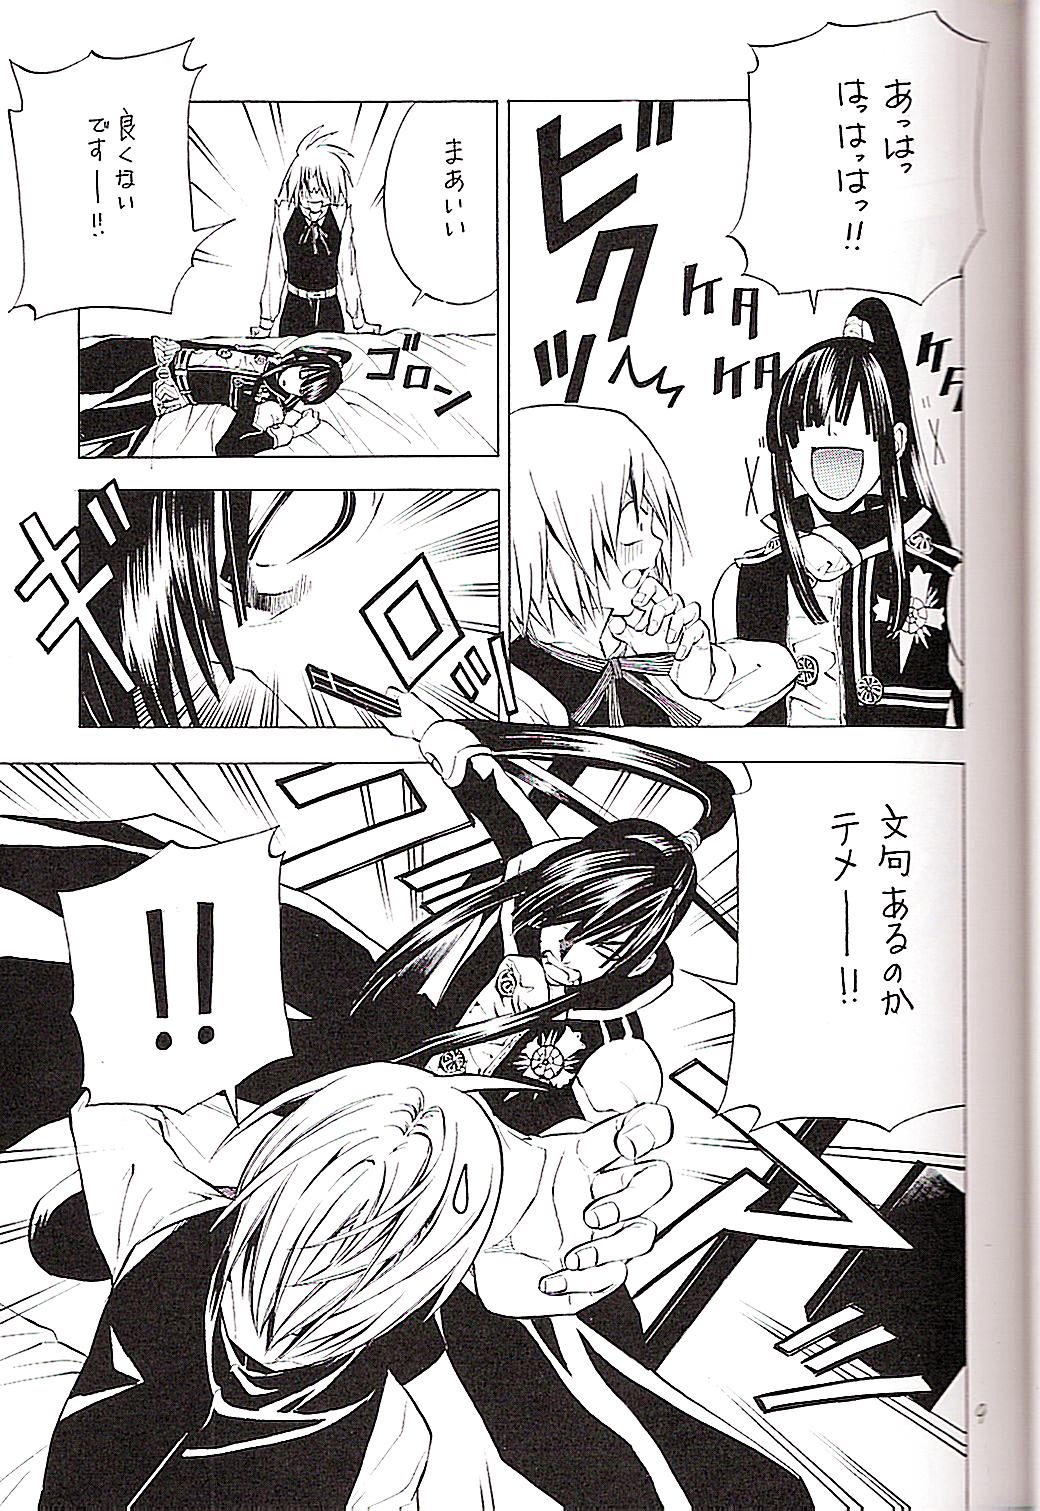 (Mimiket 12) [A.A.O (Shinohara Hana)] CRUSADER (D.Gray-man) page 9 full